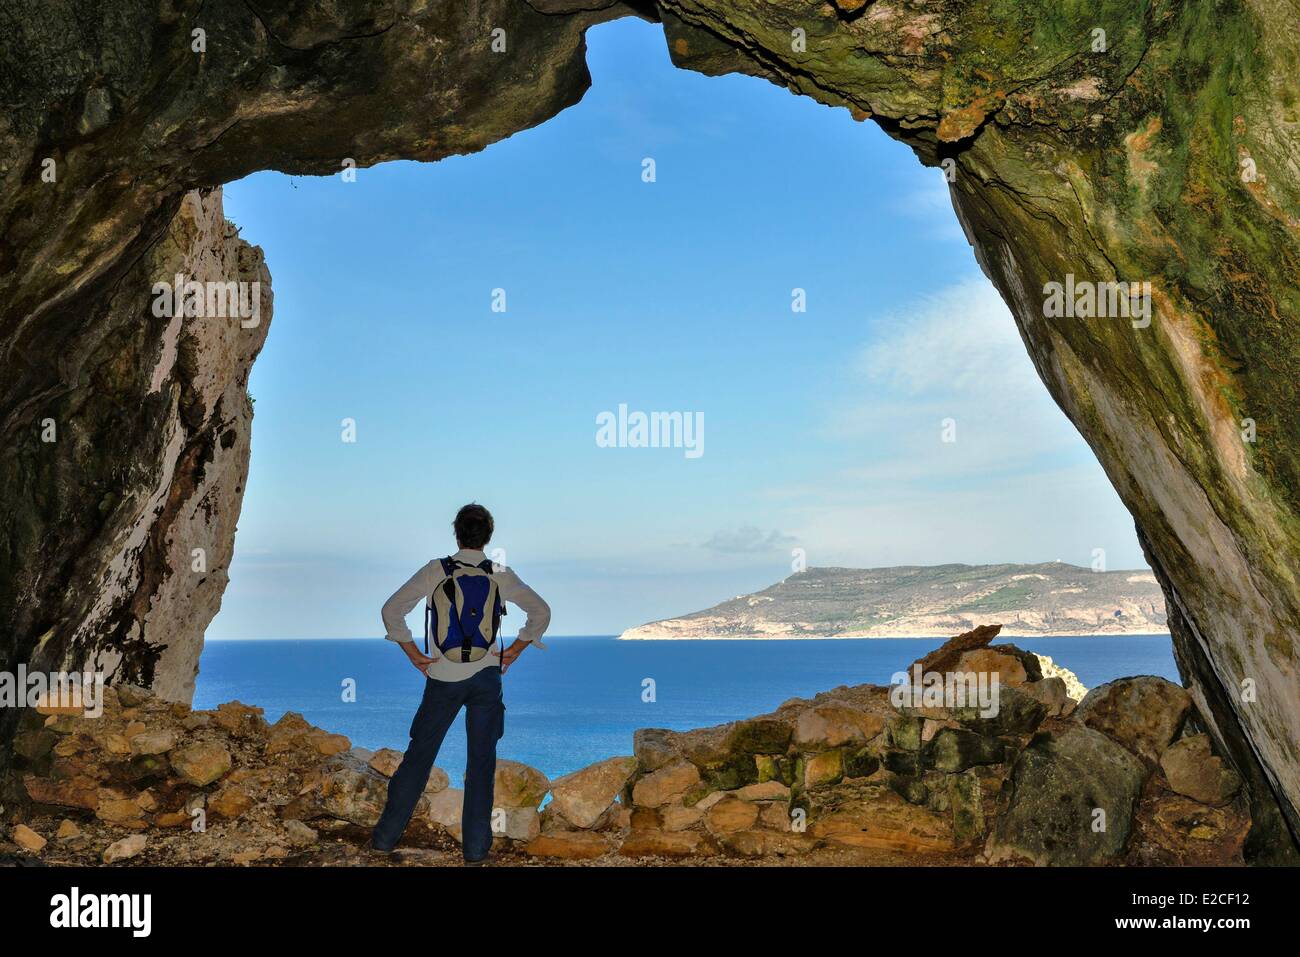 Italien, Sizilien, Ägadischen Inseln, Insel Favignana, Höhle des Uccerie Mannes der Rückseite mit Blick auf den See und auf der Insel Levanzo Stockfoto